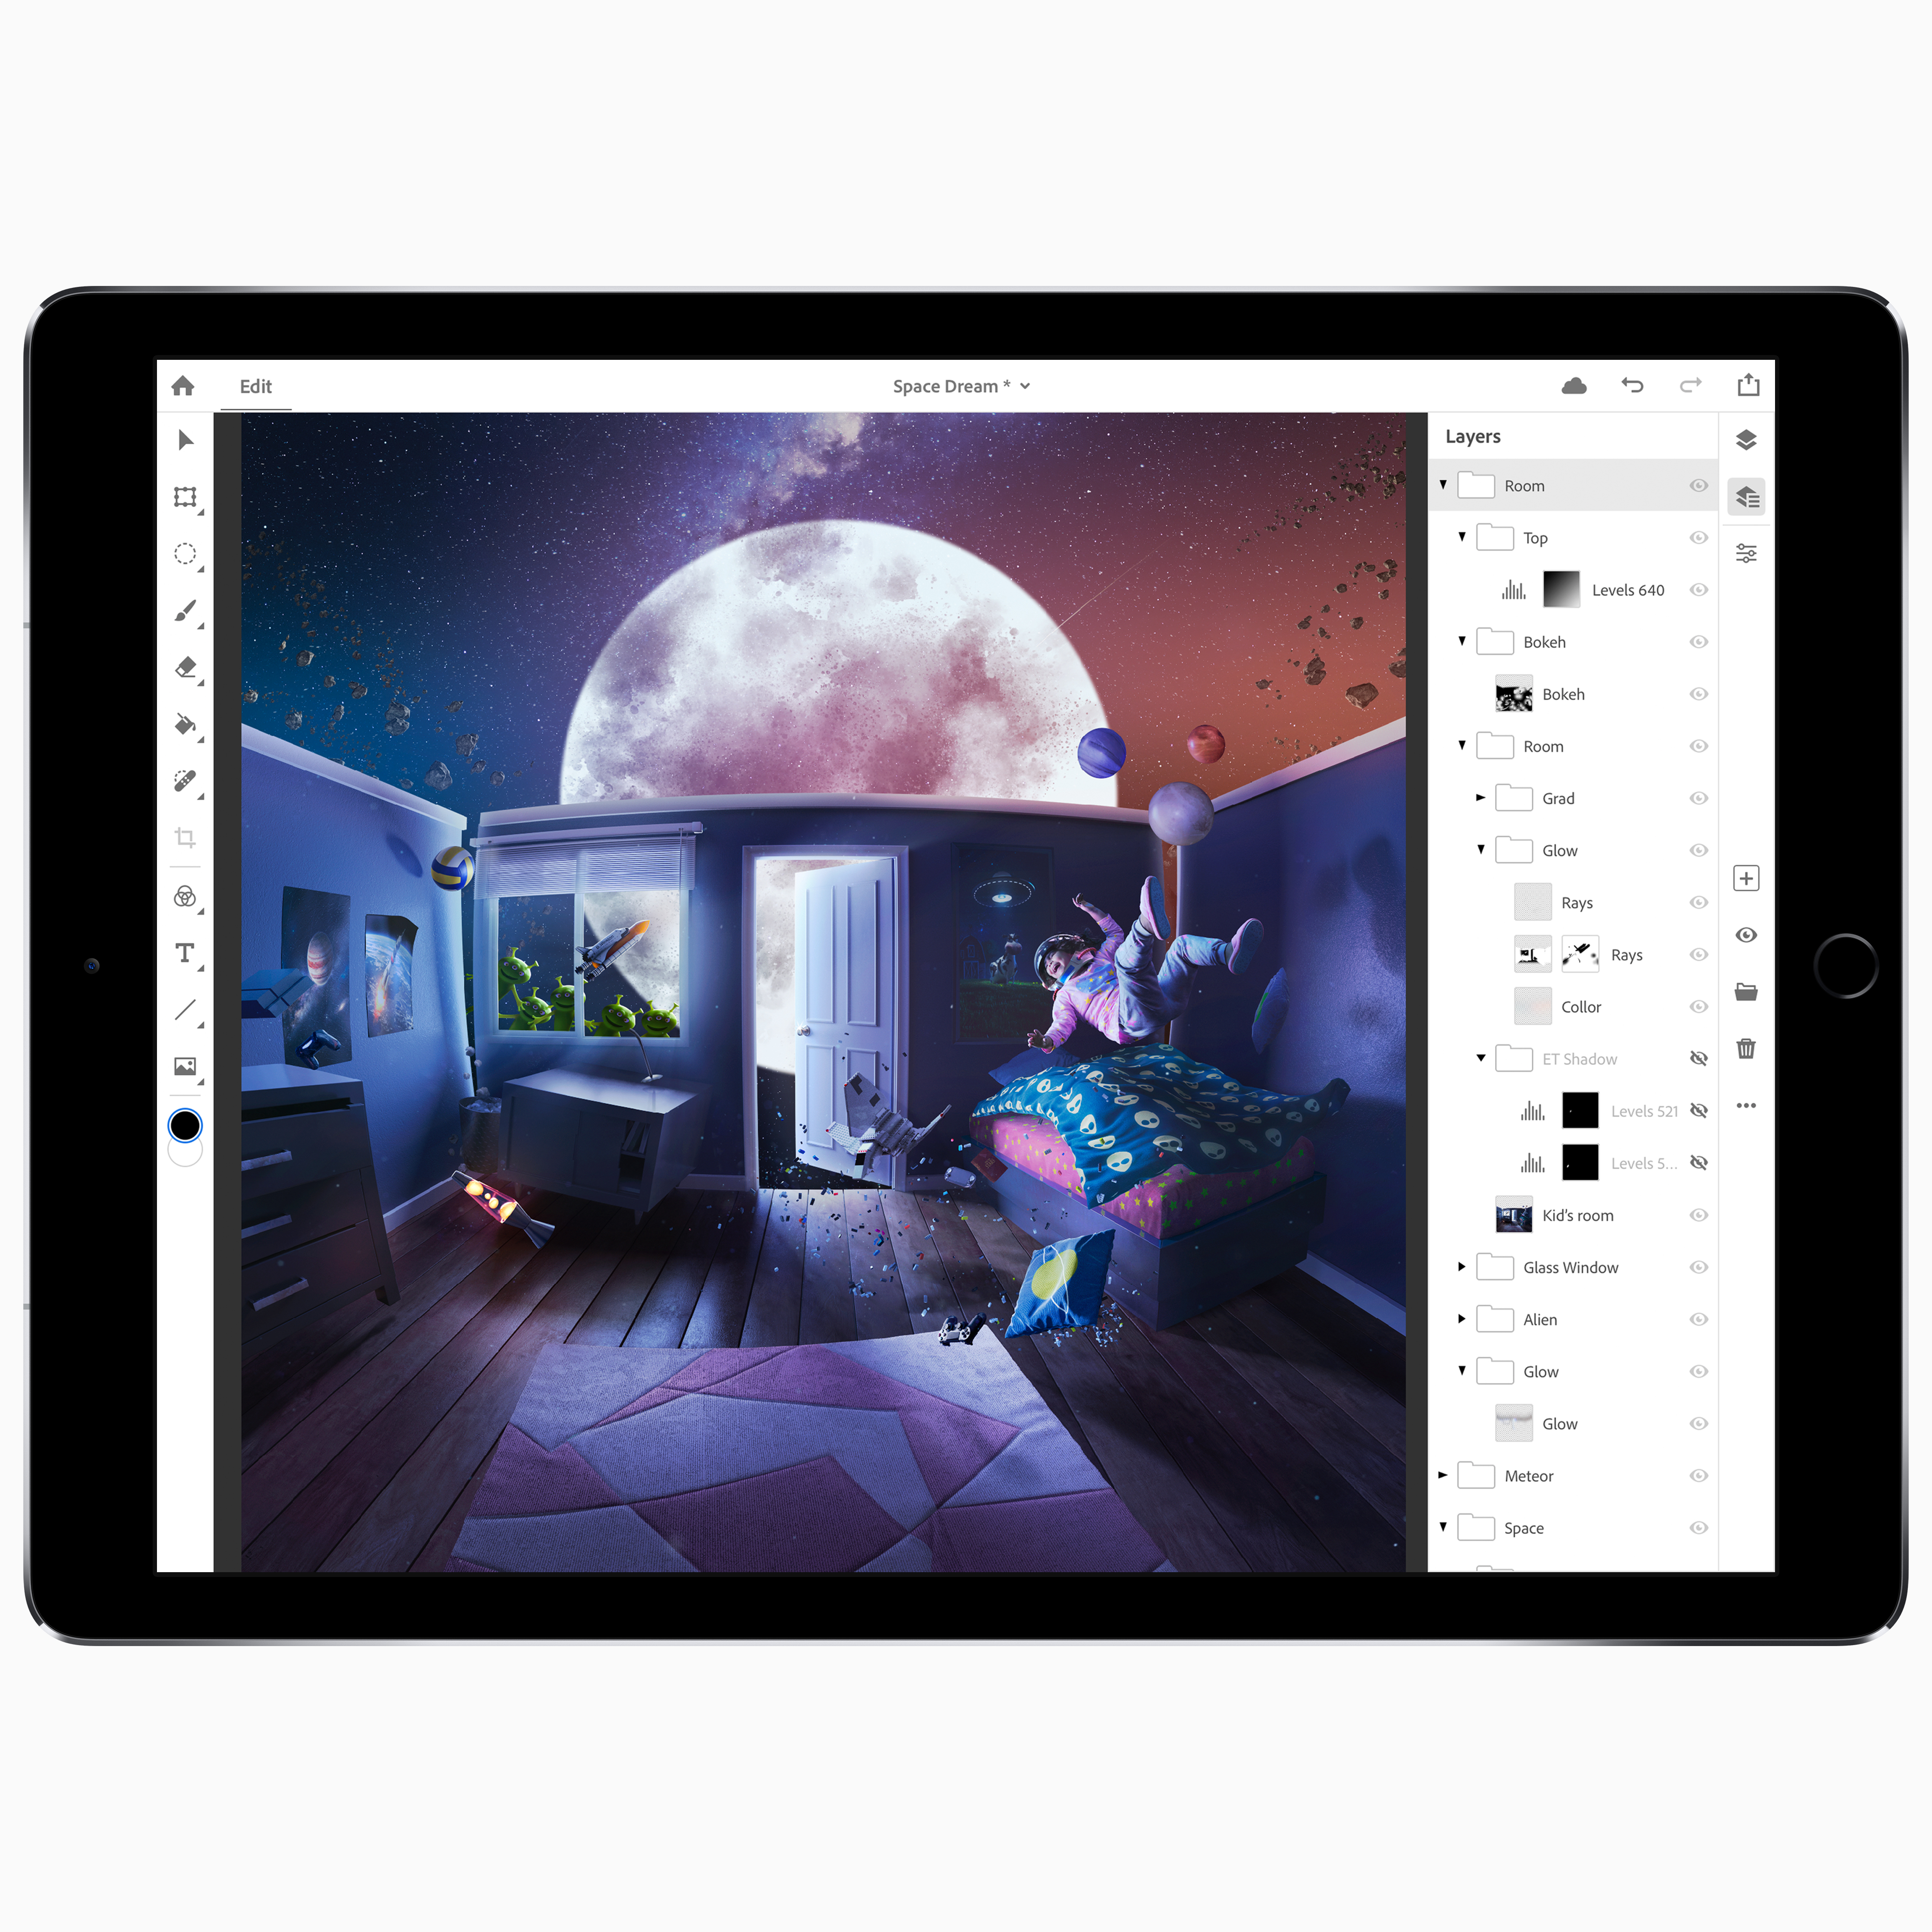 Adobe Svela Maggiori Dettagli Tecnici Su Photoshop Per Ipad